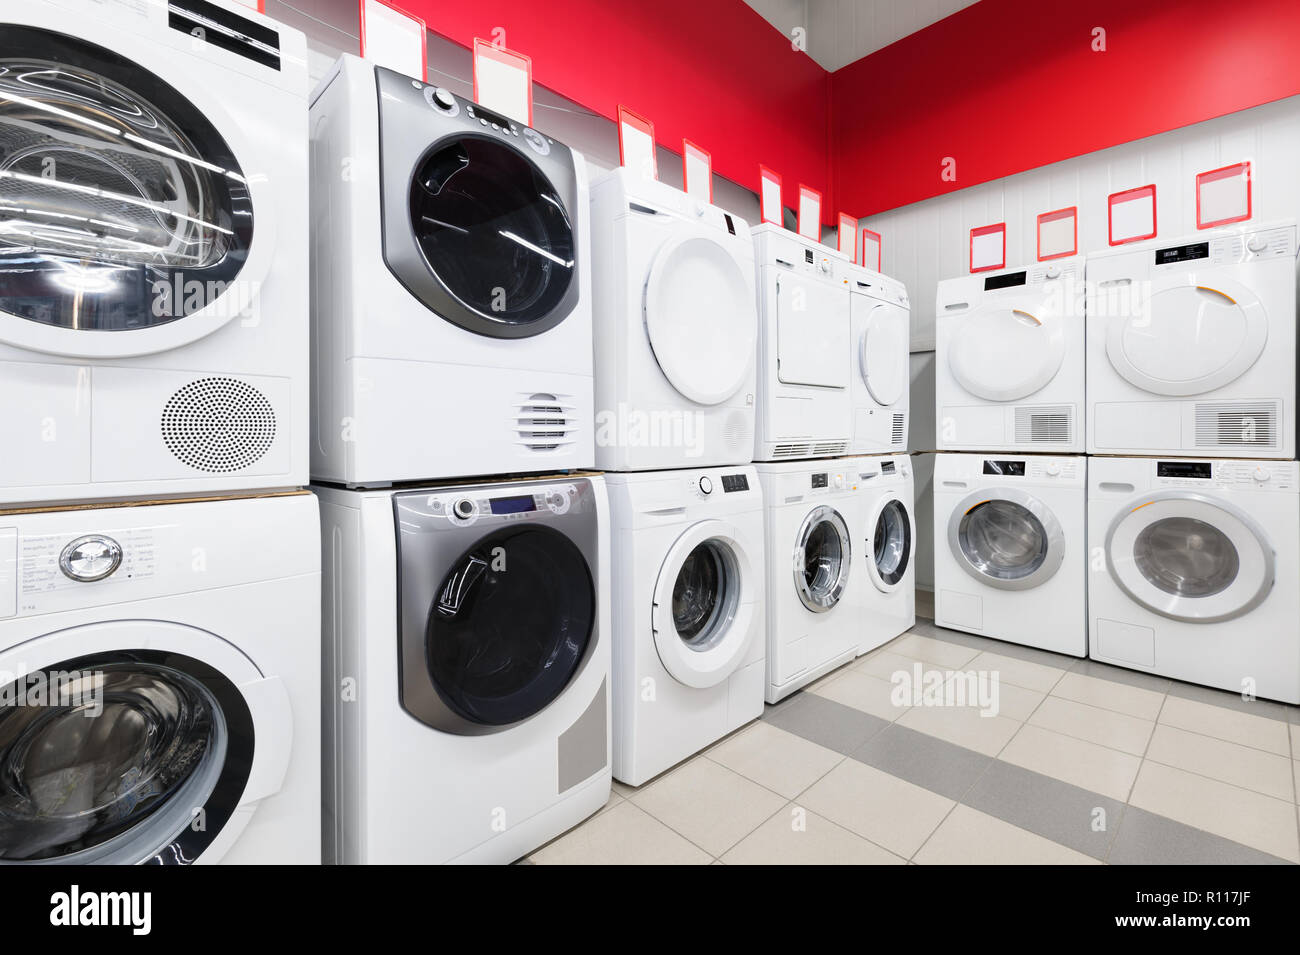 Wasch-Maschinen im Gerät speichern Stockfoto